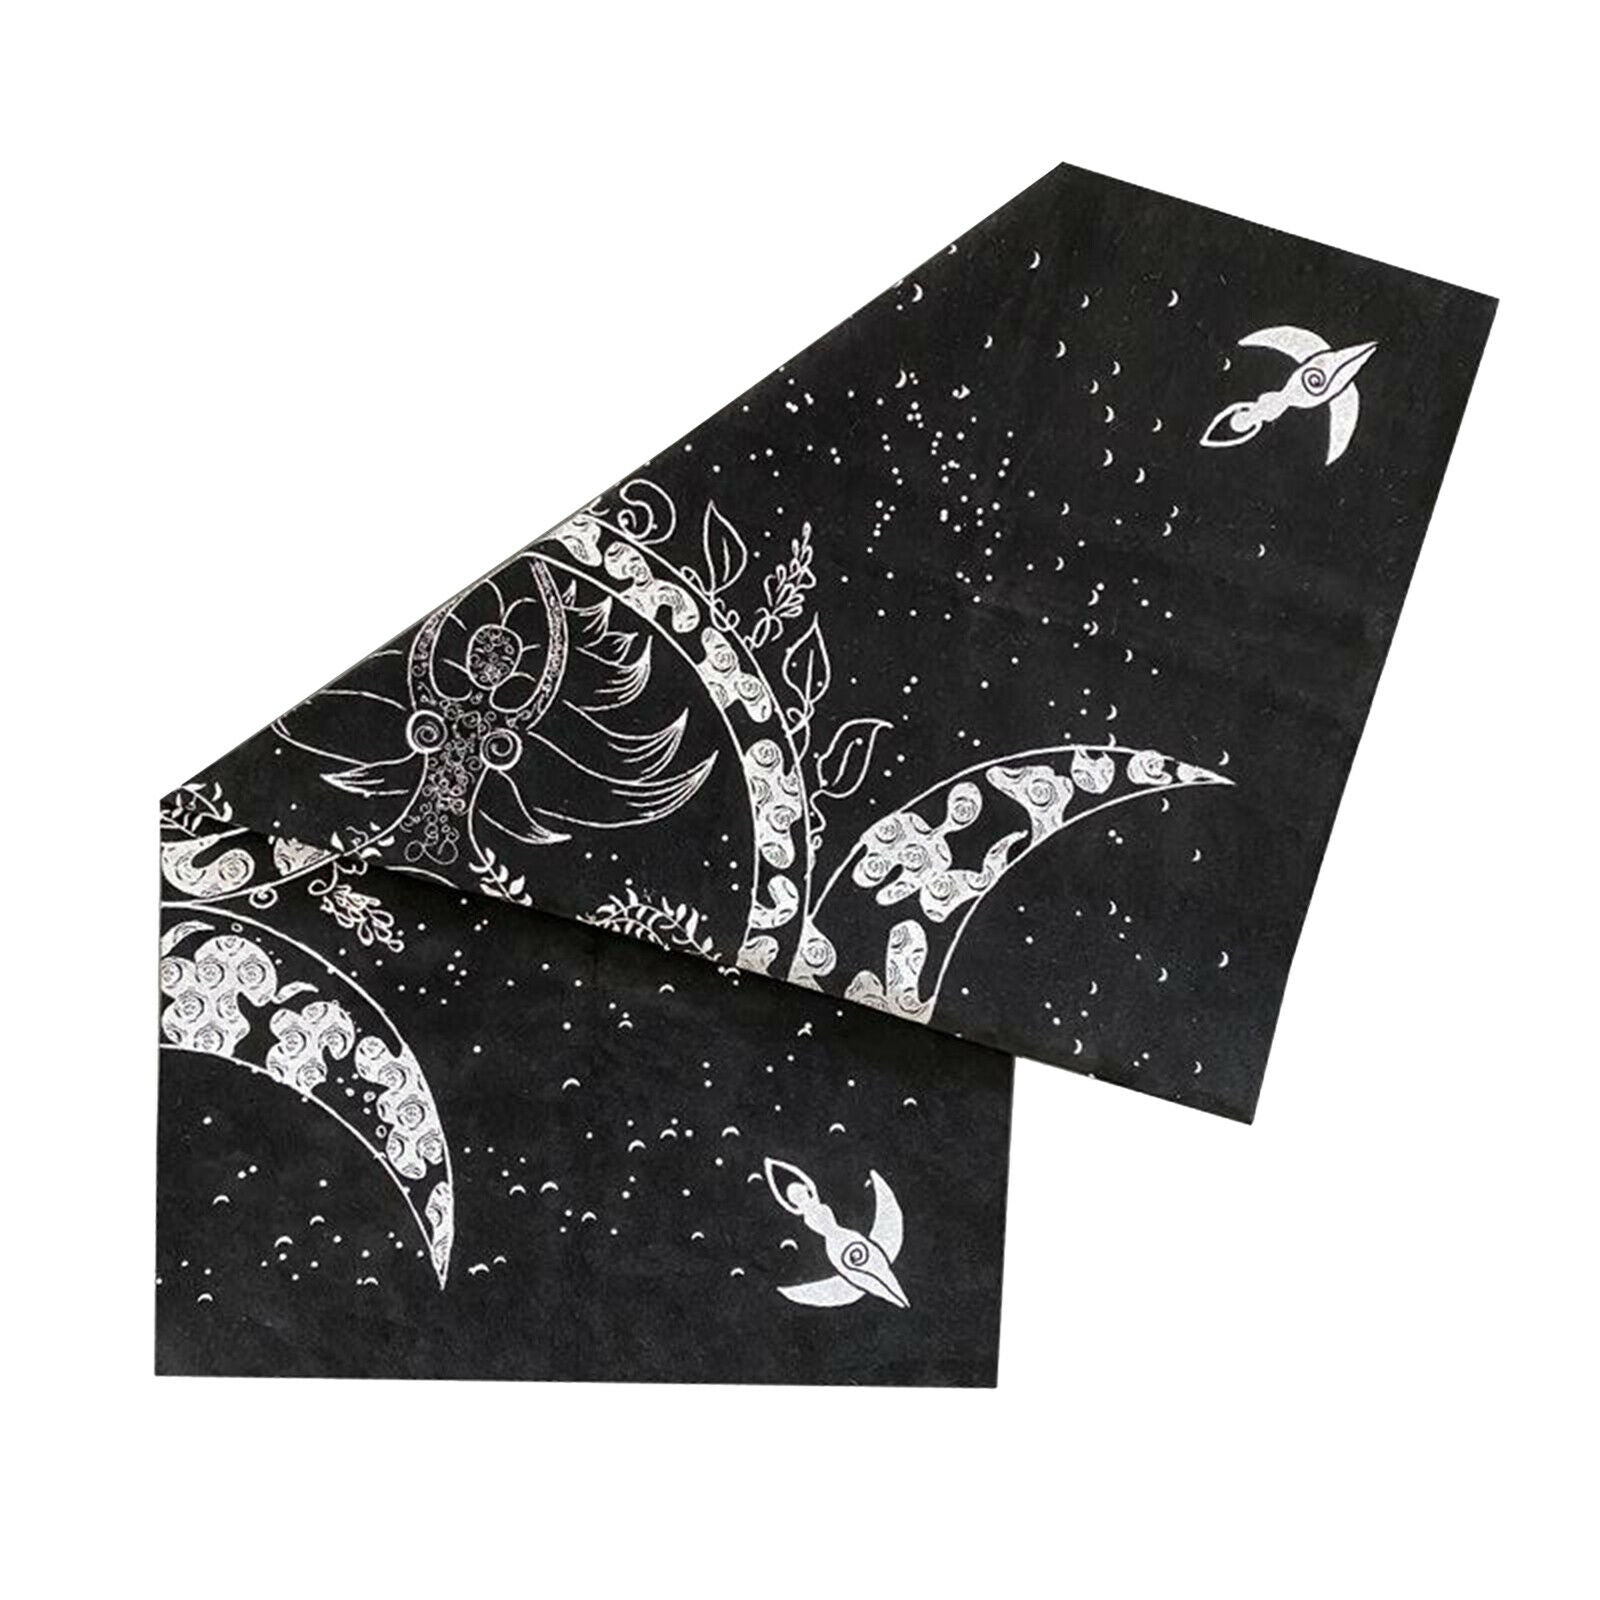 Altar Astrology Tarot Game Table Cloth Tarot Cards Tablecloth Velvet New